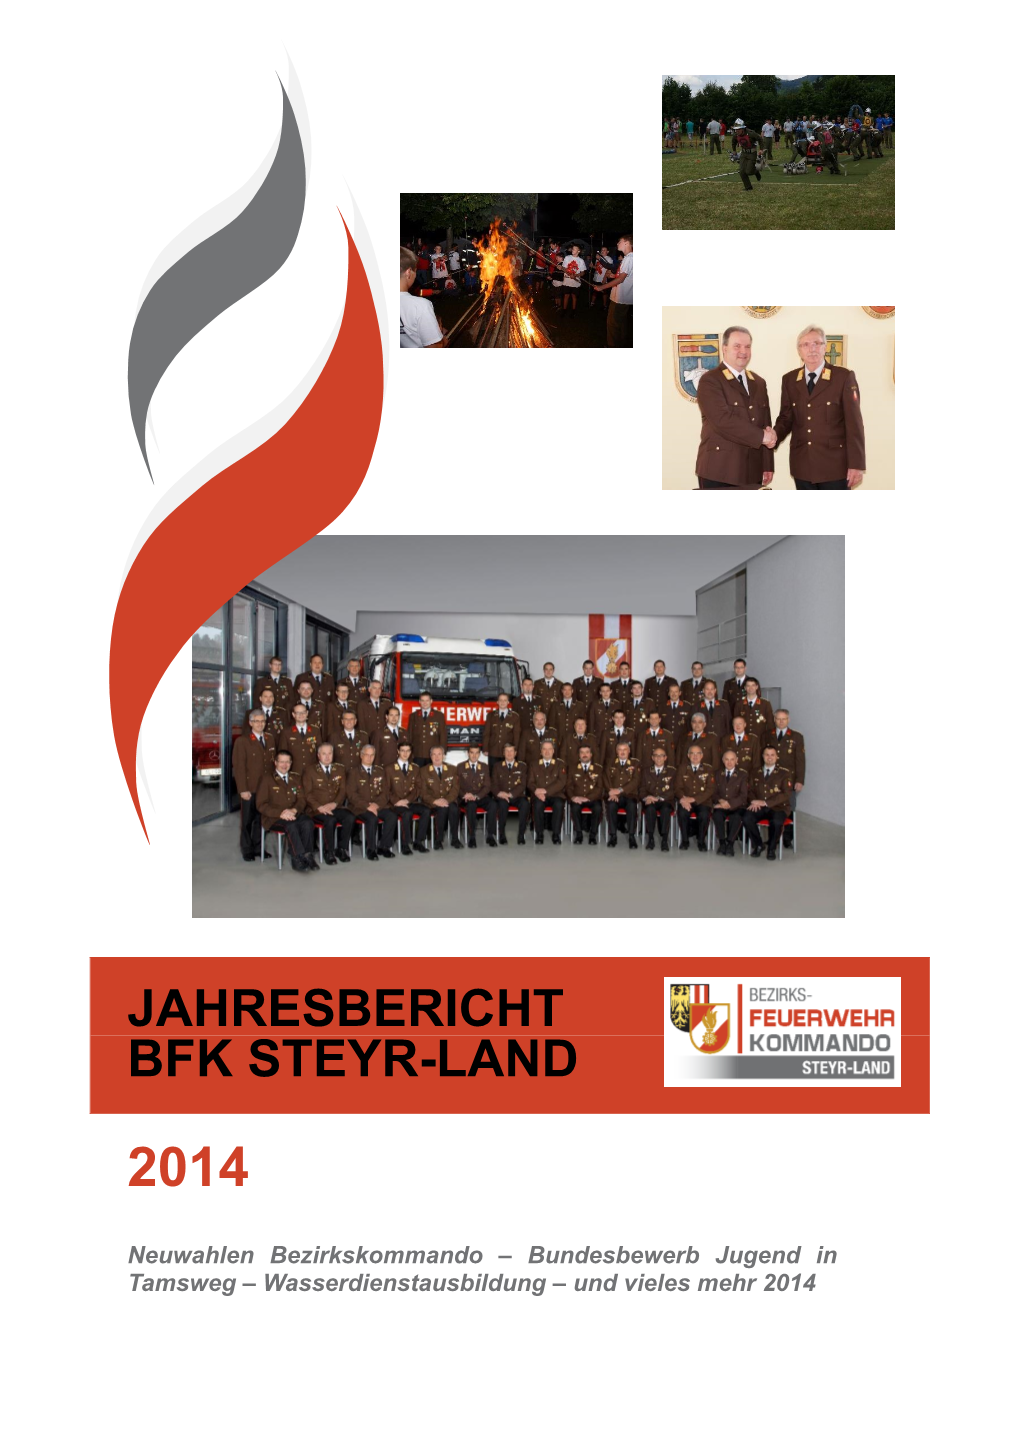 Jahresbericht Bfk Steyr-Land 2014